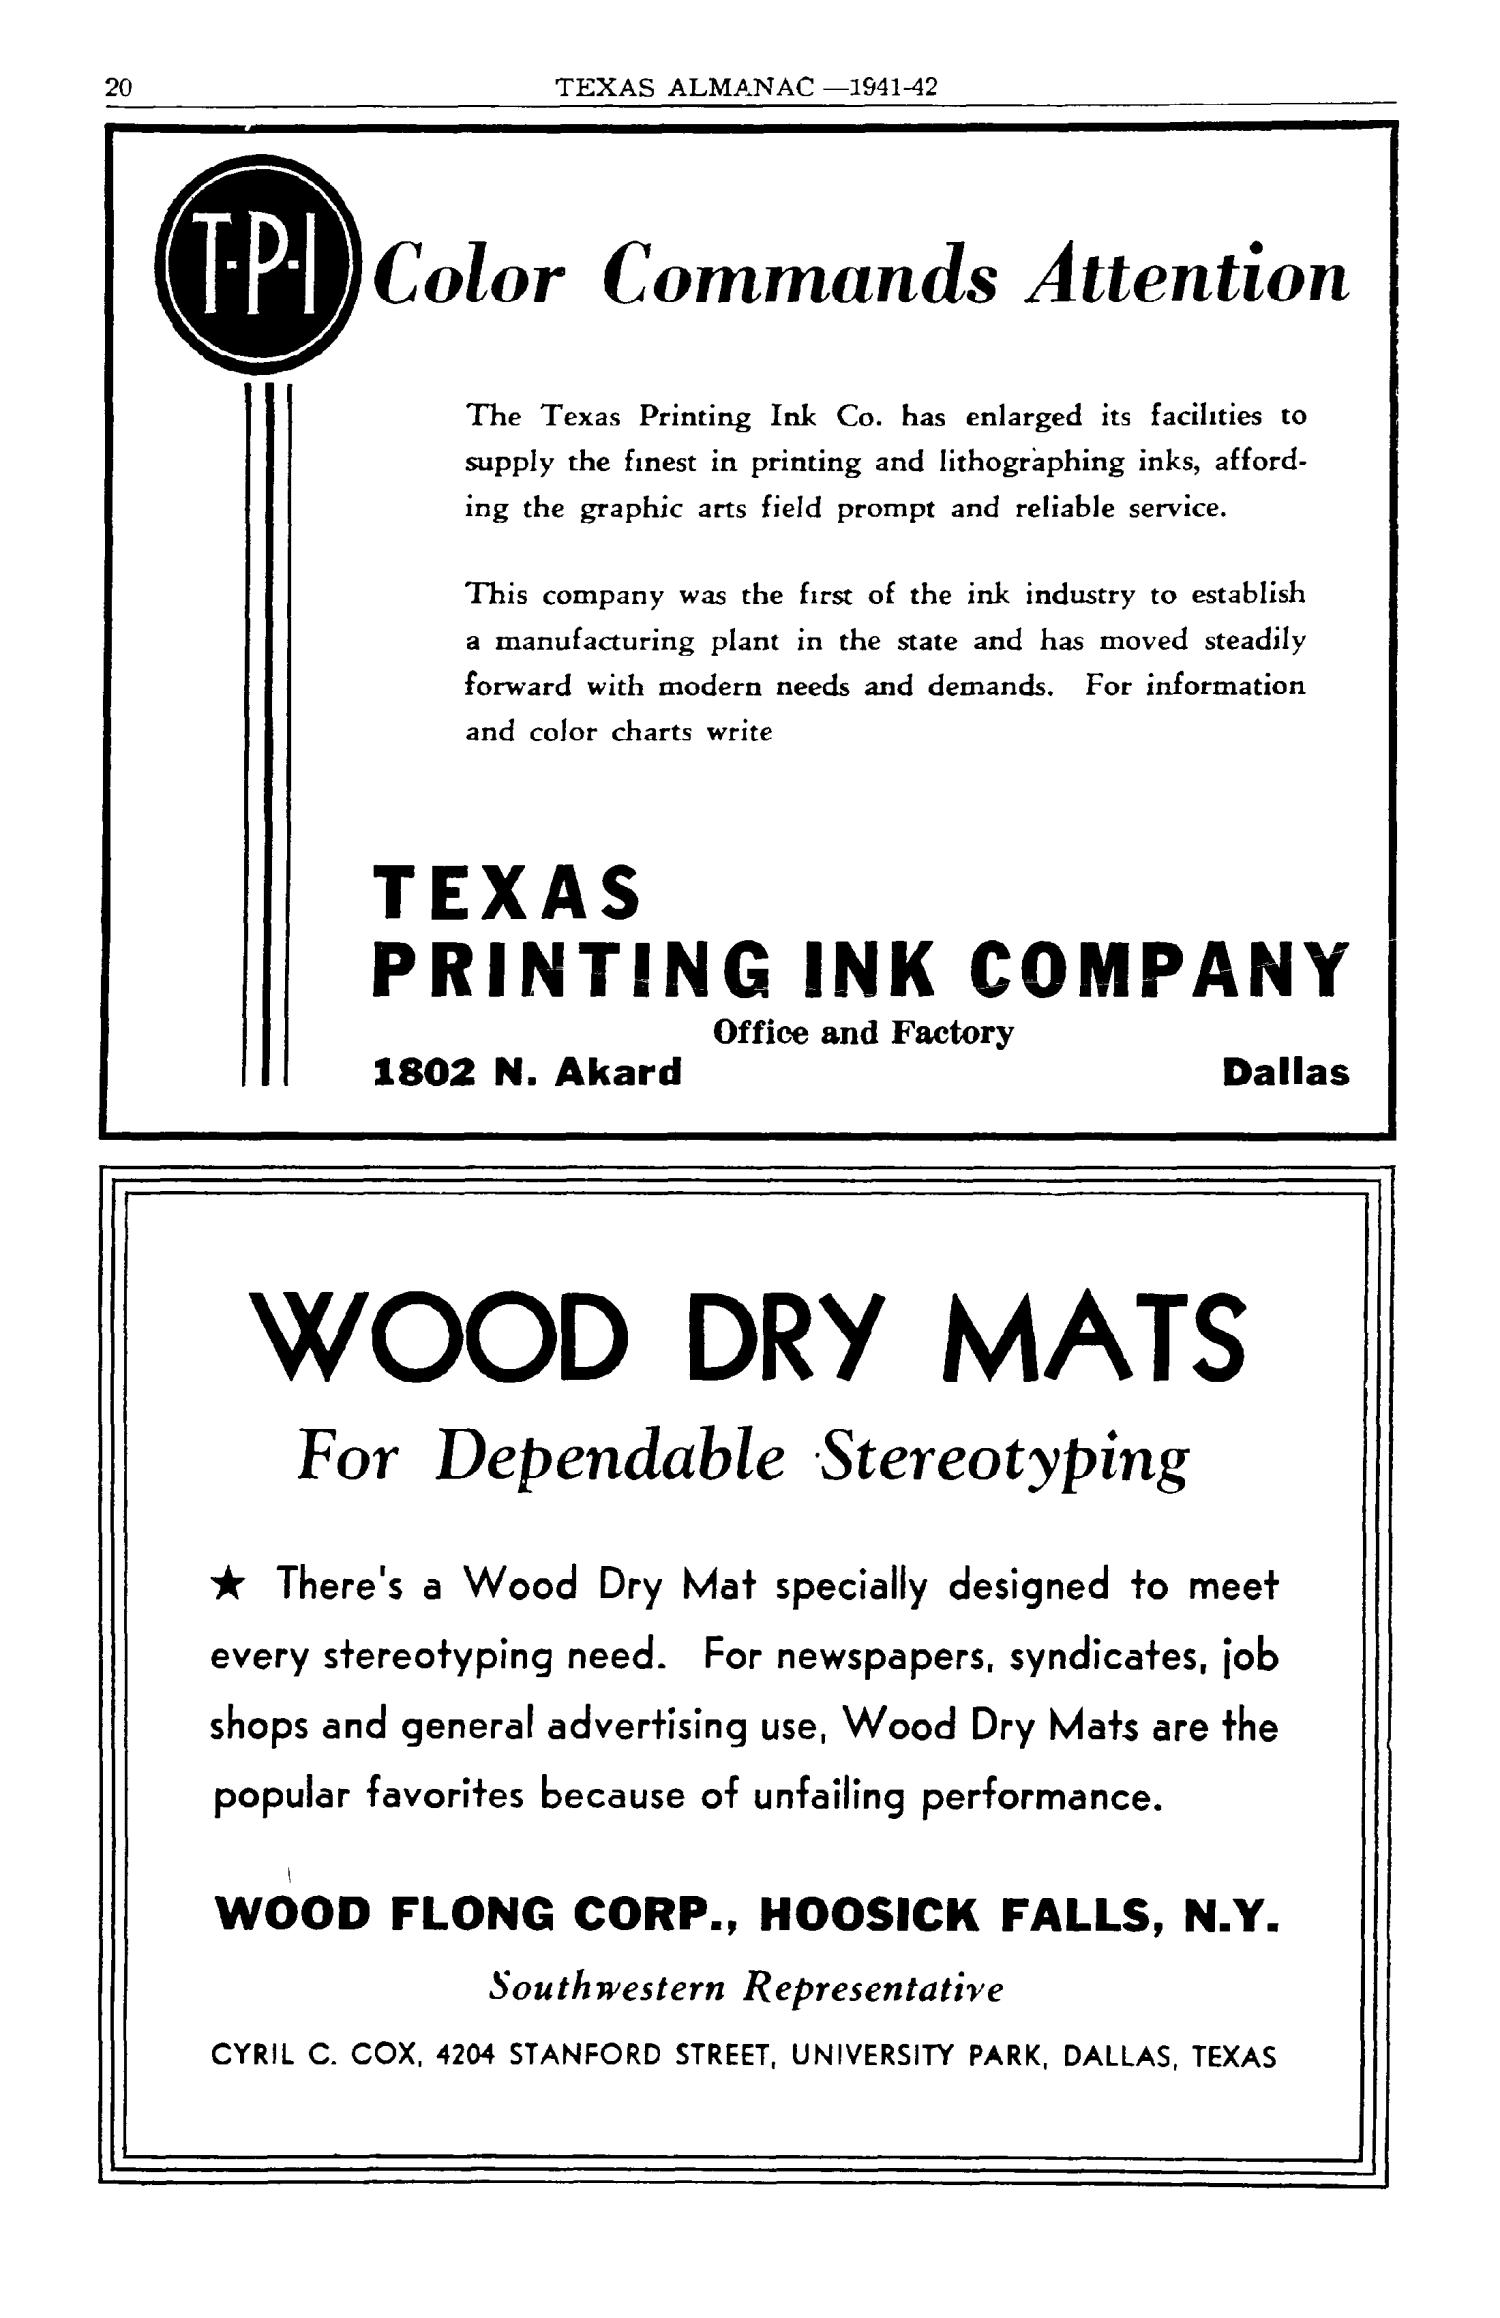 Texas Almanac, 1941-1942
                                                
                                                    20
                                                